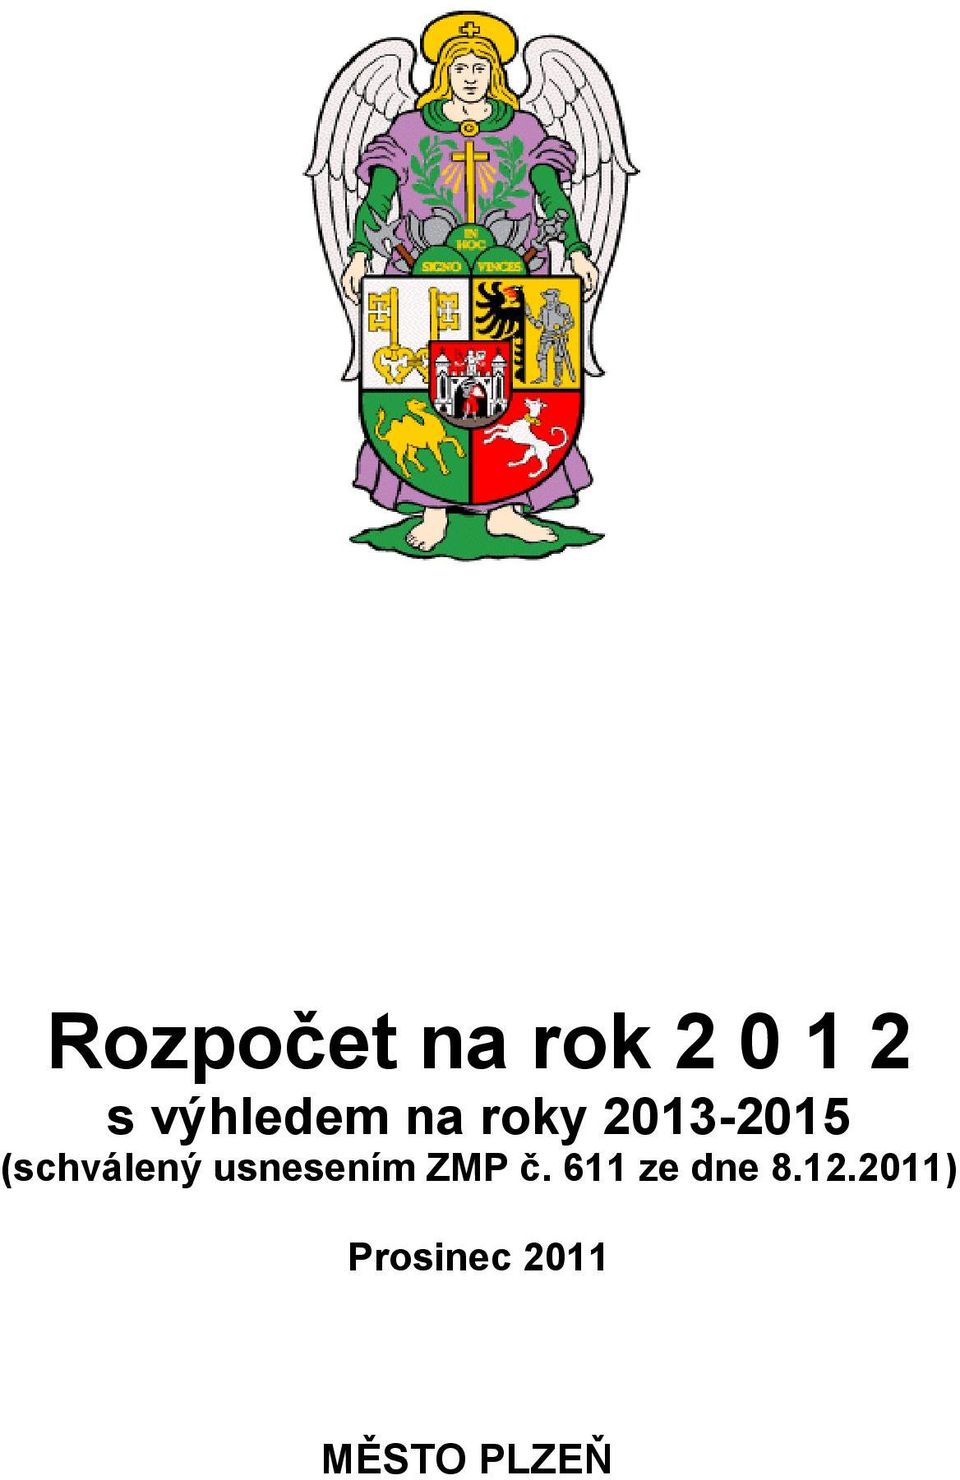 2011) Prosinec 2011 MĚSTO PLZEŇ. Ing.